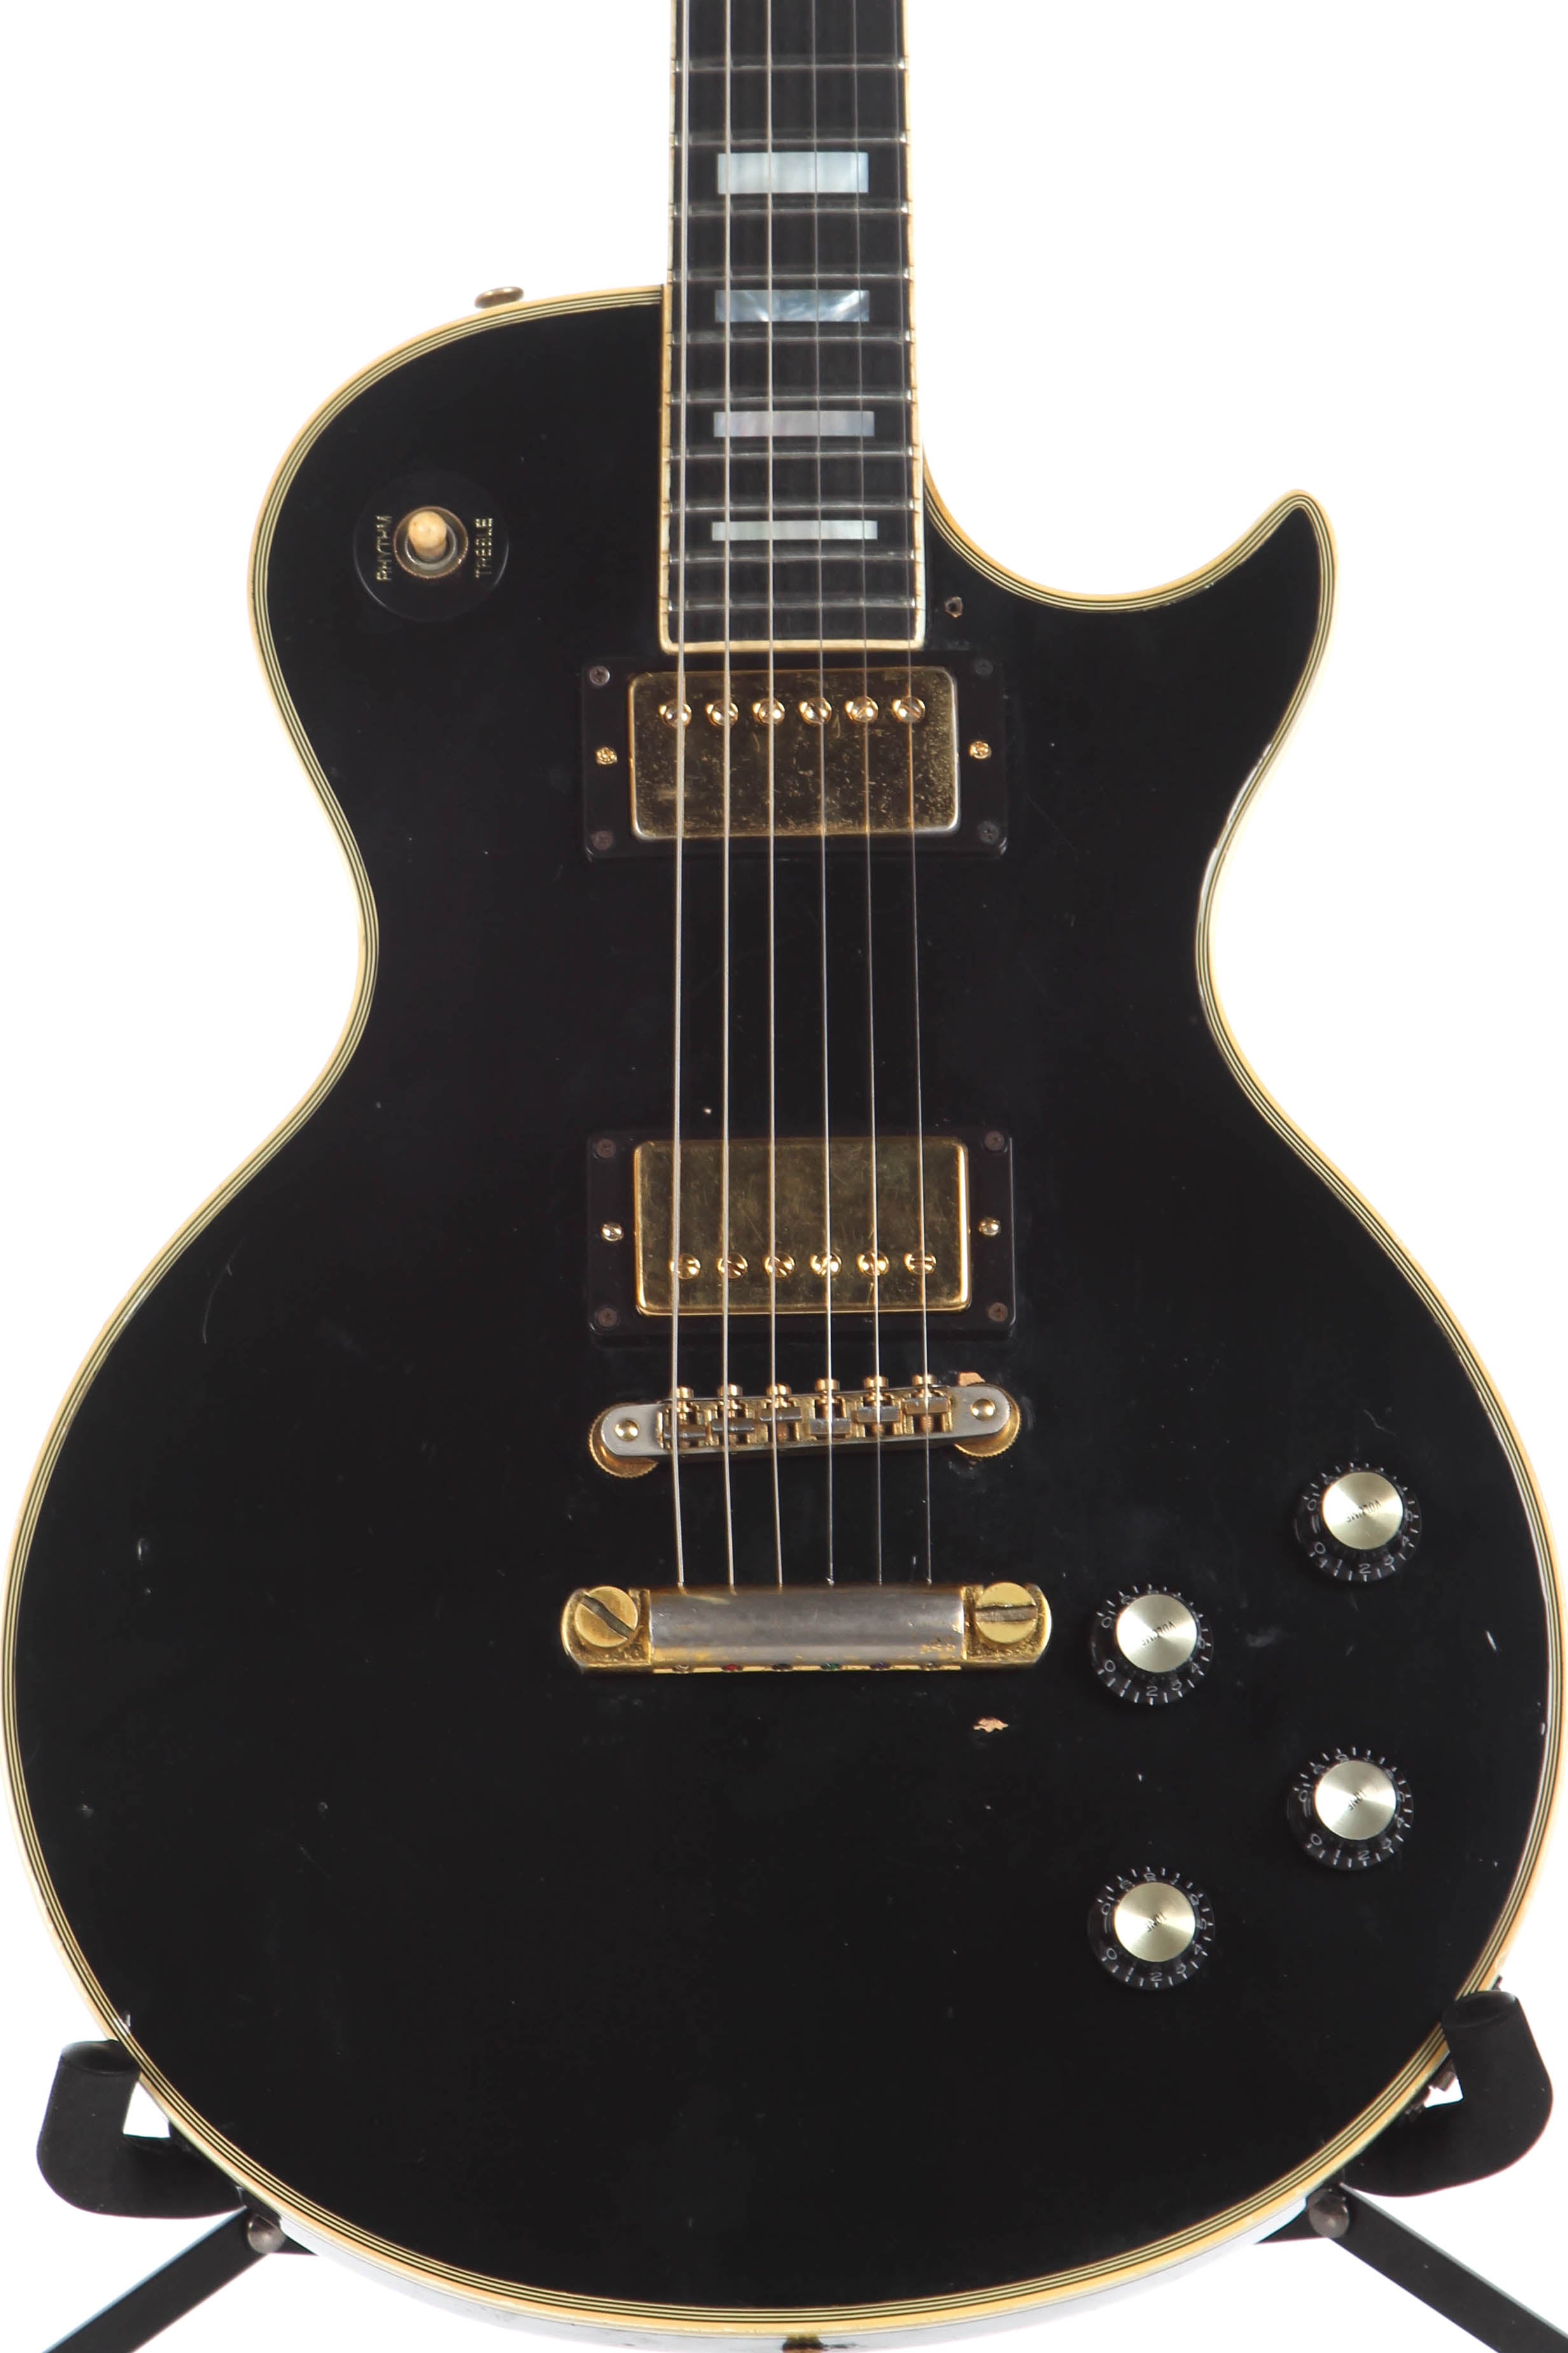 1979 Gibson Les Paul Custom Ebony Black Beauty | Guitar Chimp